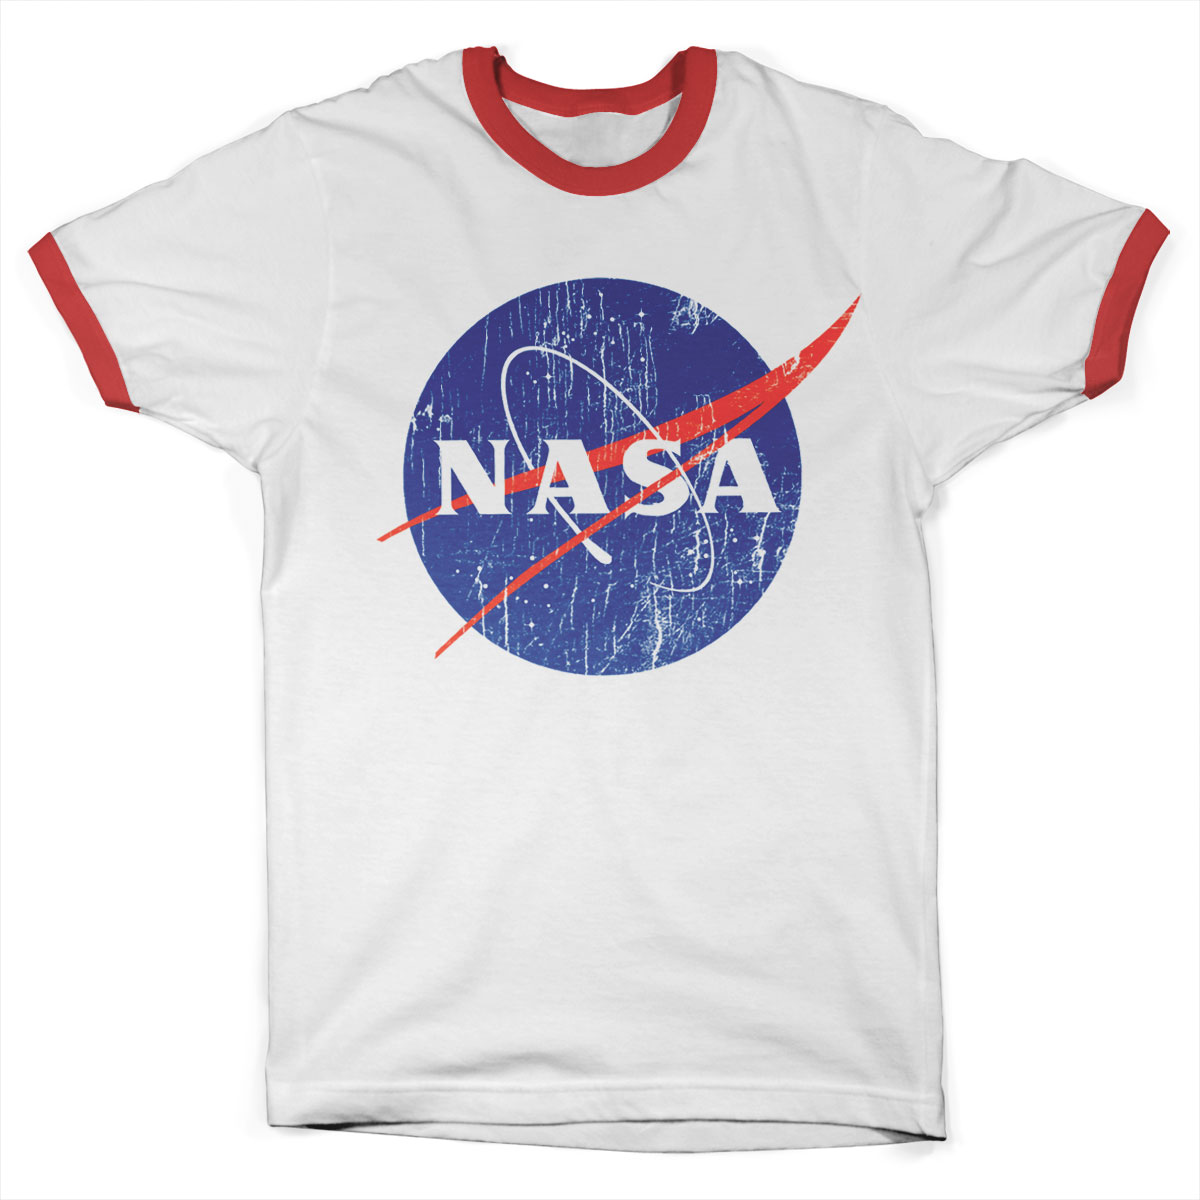 Tričko NASA - Washed Insignia Ringer (Červené)